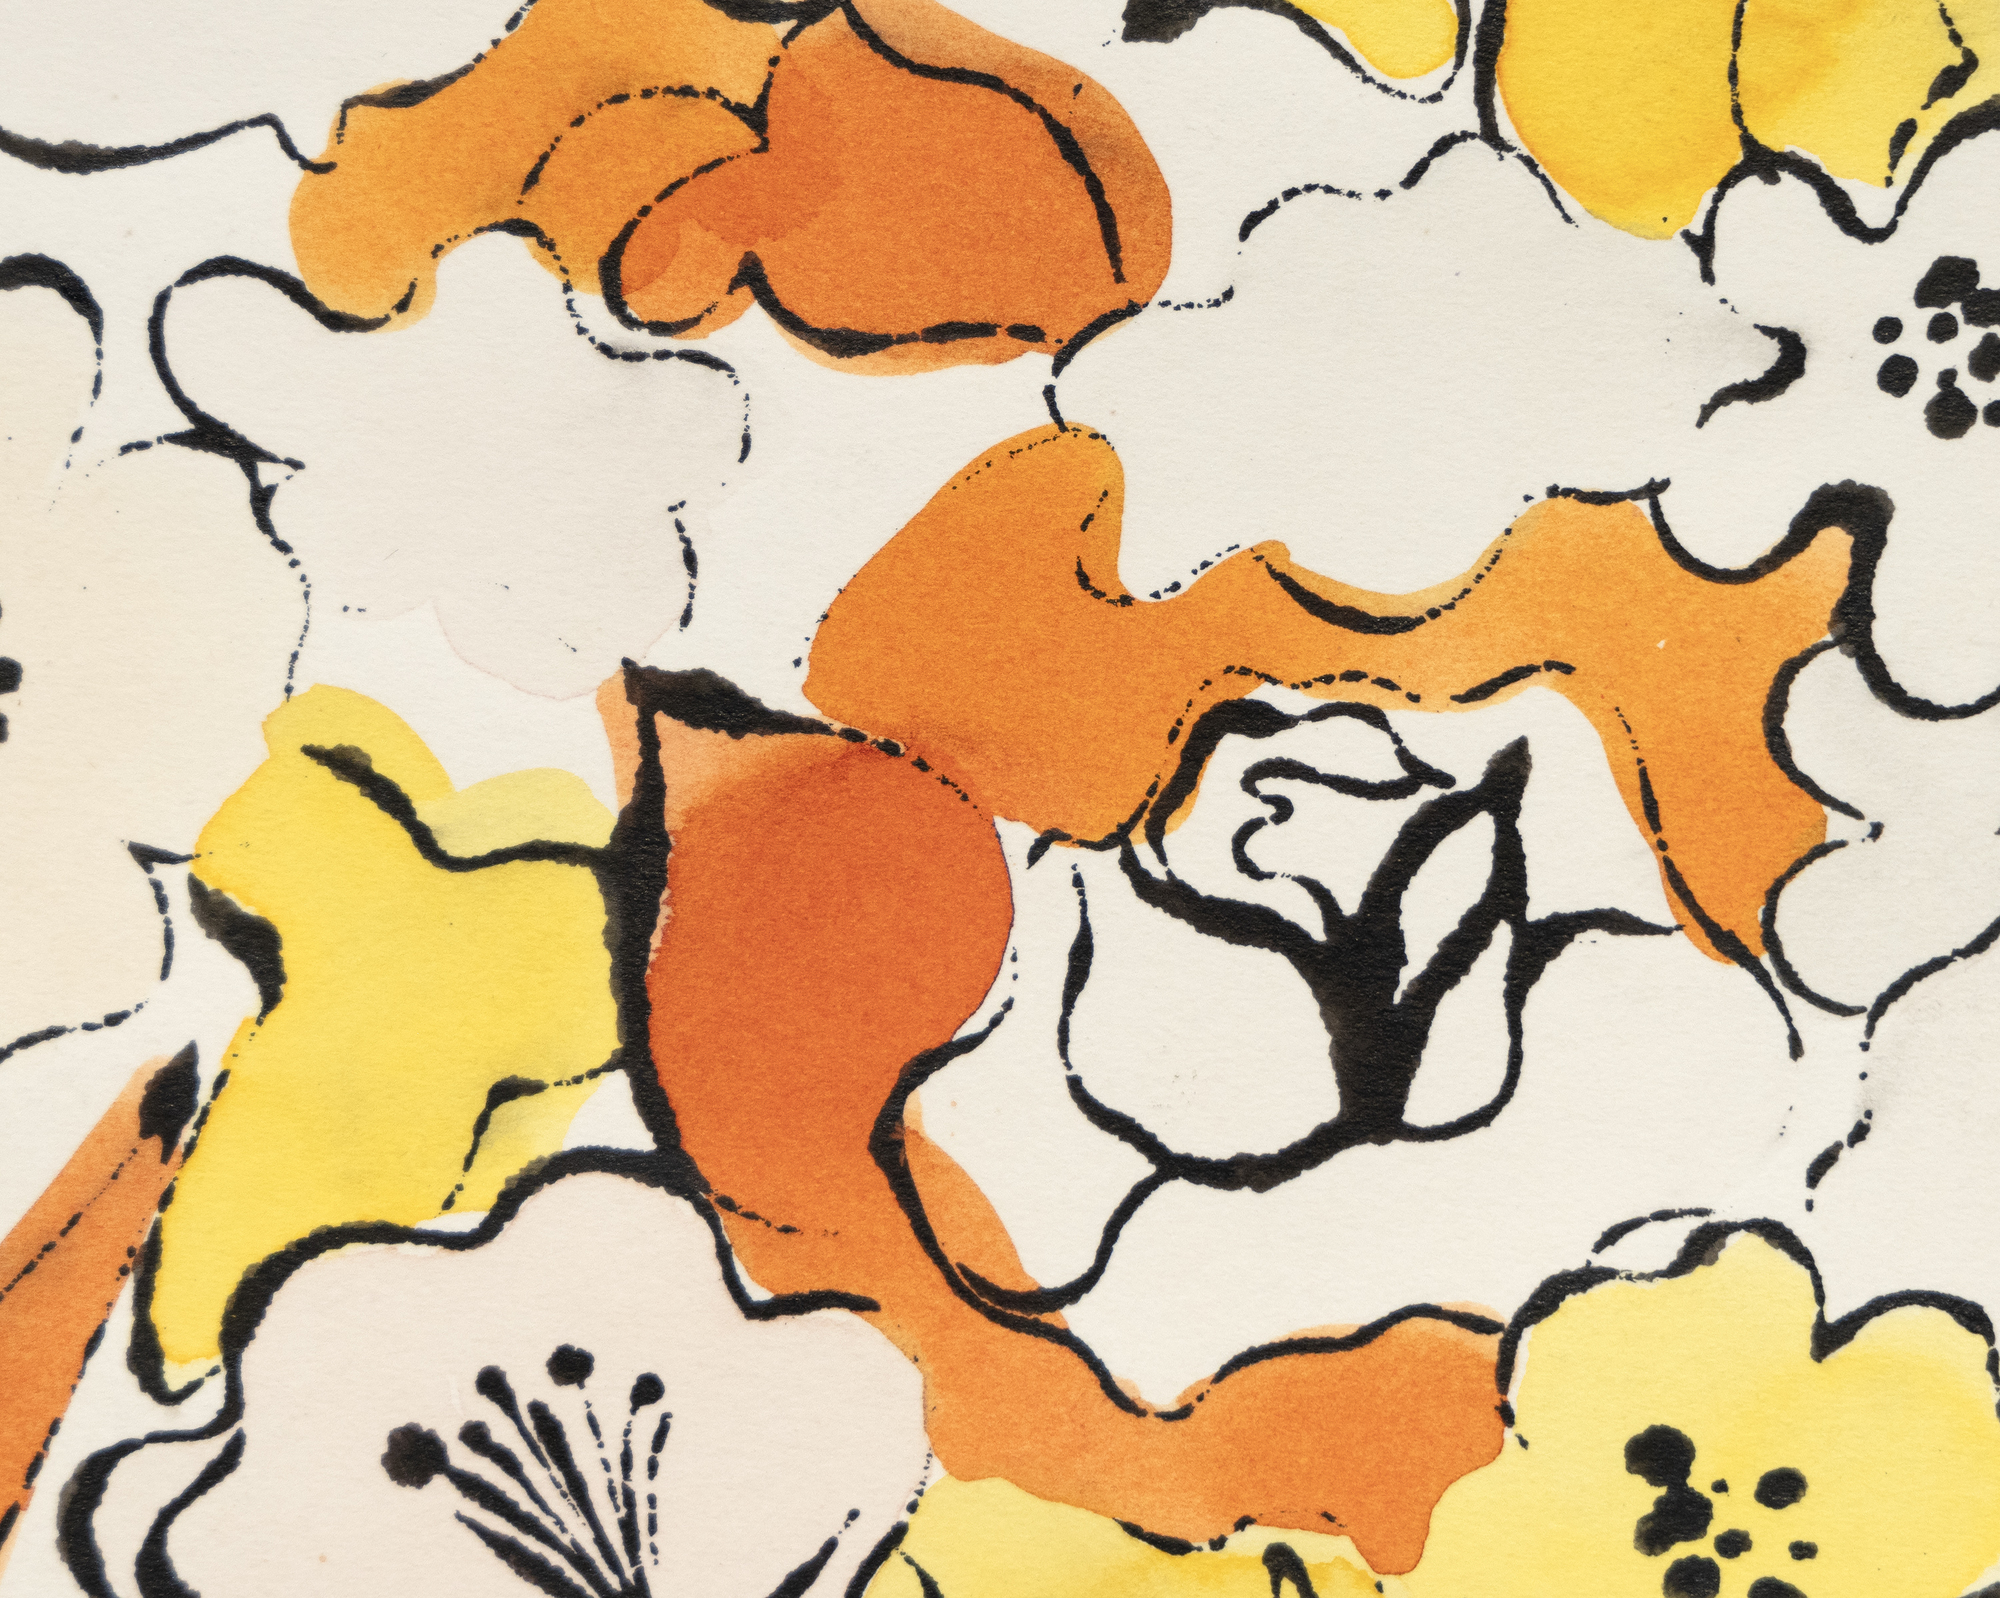 רישומי הדיו וצבע הצבע של וורהול מציגים את כישרון צמצום המוטיבים והאלמנטים לטבעם המהותי תוך שימוש בכלכלה של קווים ושובבות נפלאה המאפיינת כל אחד מהם. לעתים קרובות הם מזכירים לנו שאמנות יכולה להיות הספקית יעילה ביותר של הומור וגחמנות אם אינה מסובכת וזורמת בחופשיות. ללא כותרת, פרחים הוא הקדמה של הפריסה המפורסמת שלו בווג 1960, המשלבת ציורים של פרחים בצבעי ניאון. הוא צופה את נטייתו המוקדמת של וורהול להפריד בין קו לצבע, מכשיר שמאוחר יותר יעניק לדימויי מסך המשי שלו את המיידיות המופשטת שלהם.